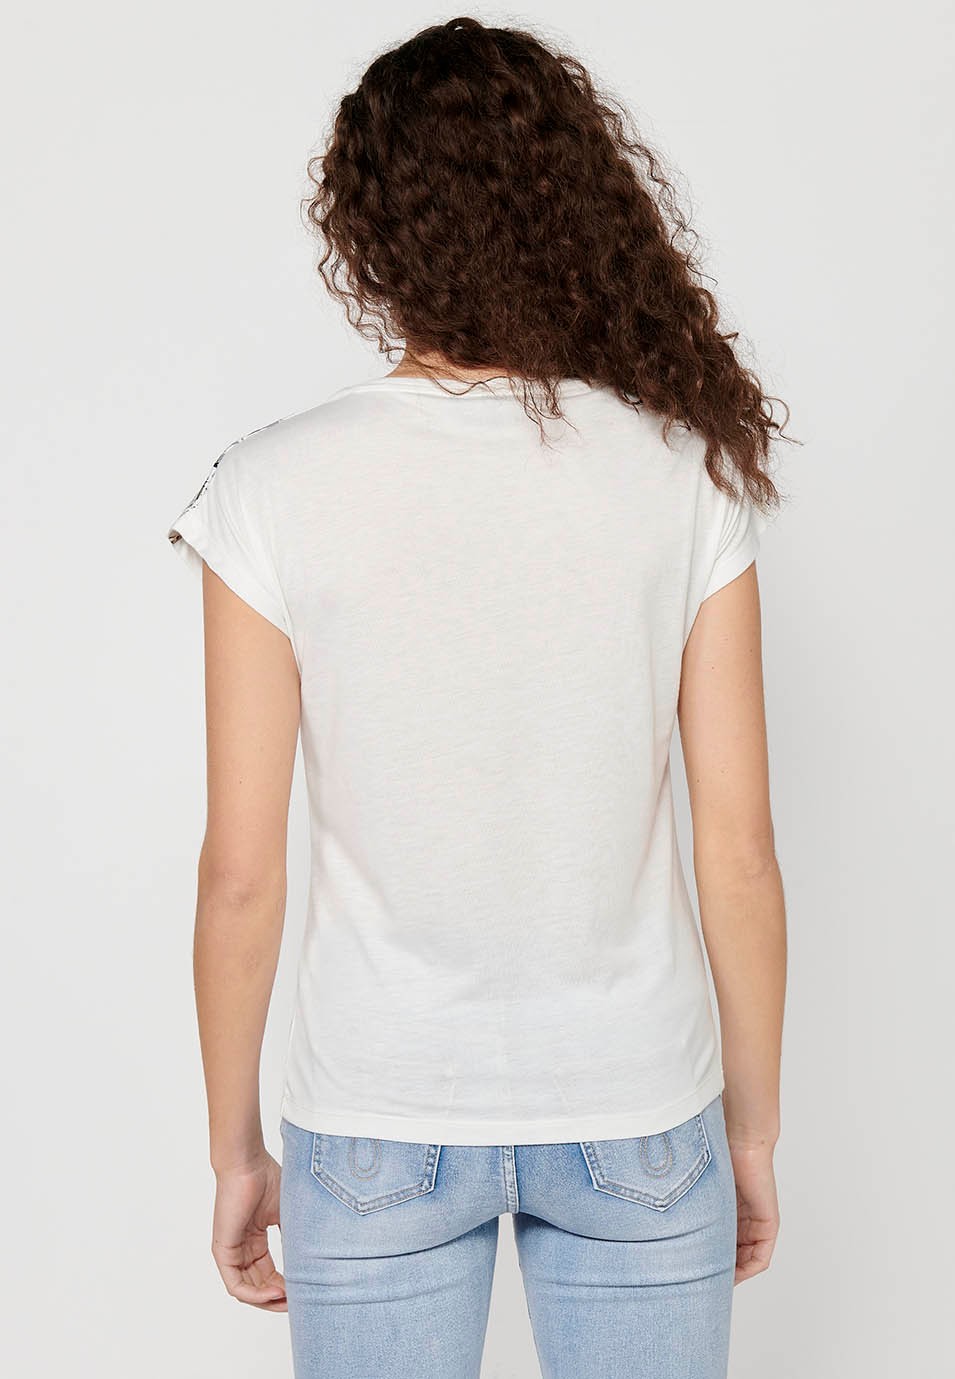 T-shirt à manches courtes et col rond pour femmes, couleur blanche, imprimé sur le devant